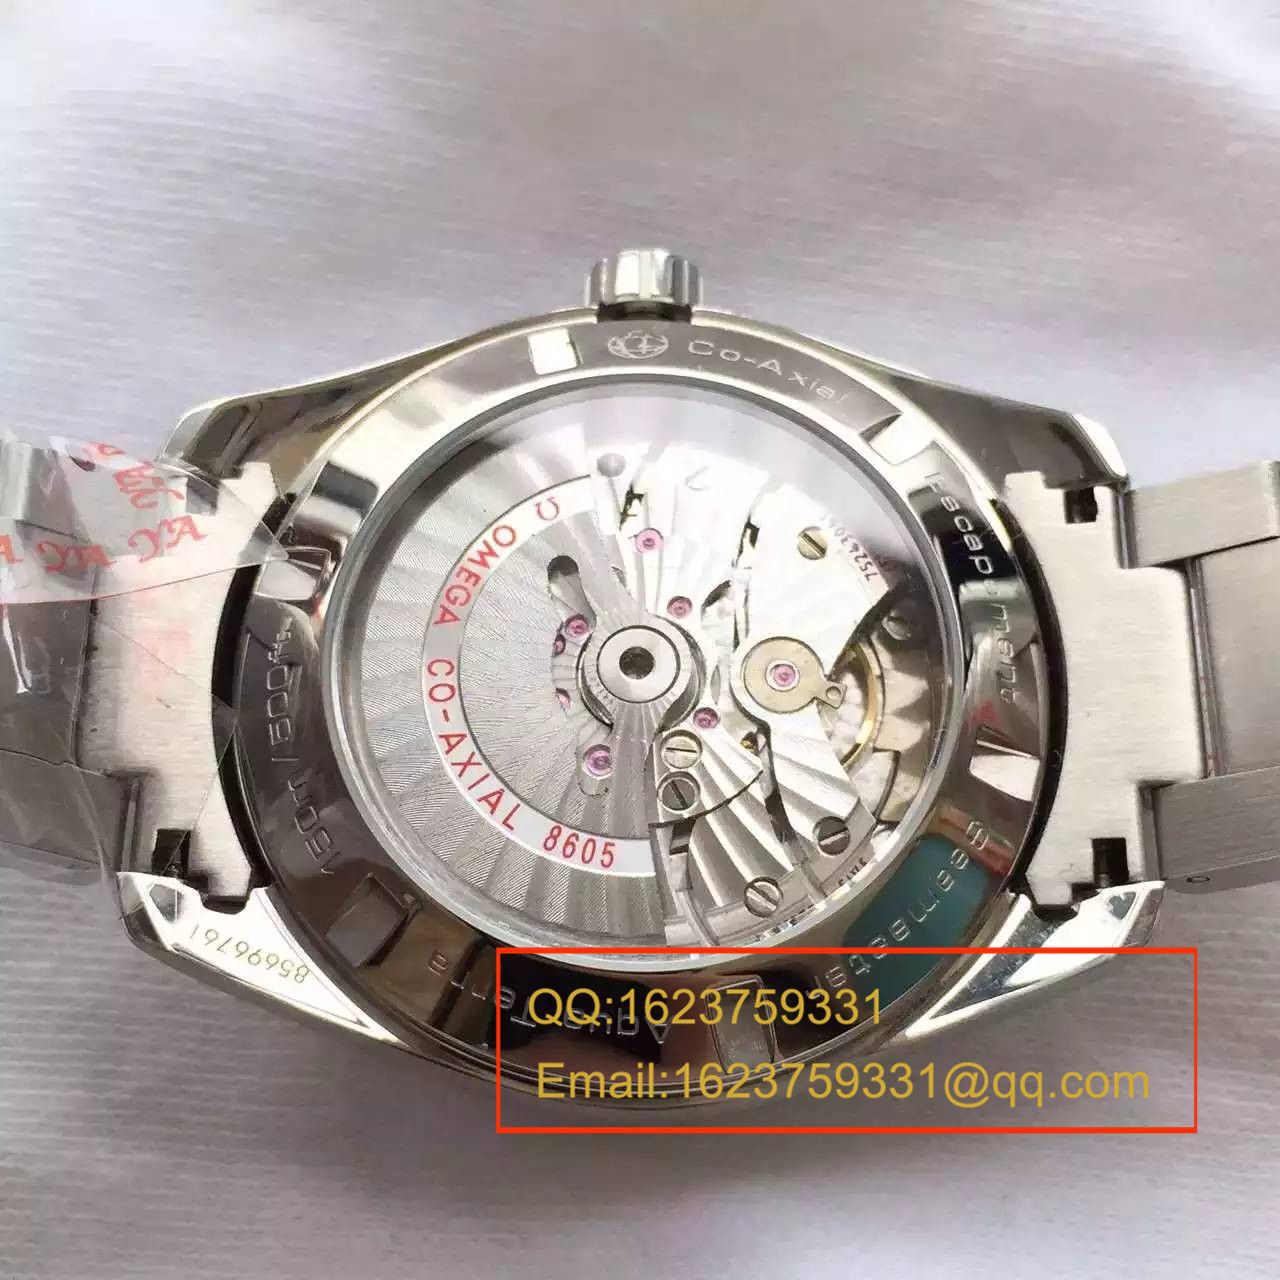 【KW厂完美版】欧米茄海马系列231.10.43.22.03.001 GMT双时区机械腕表 / M132